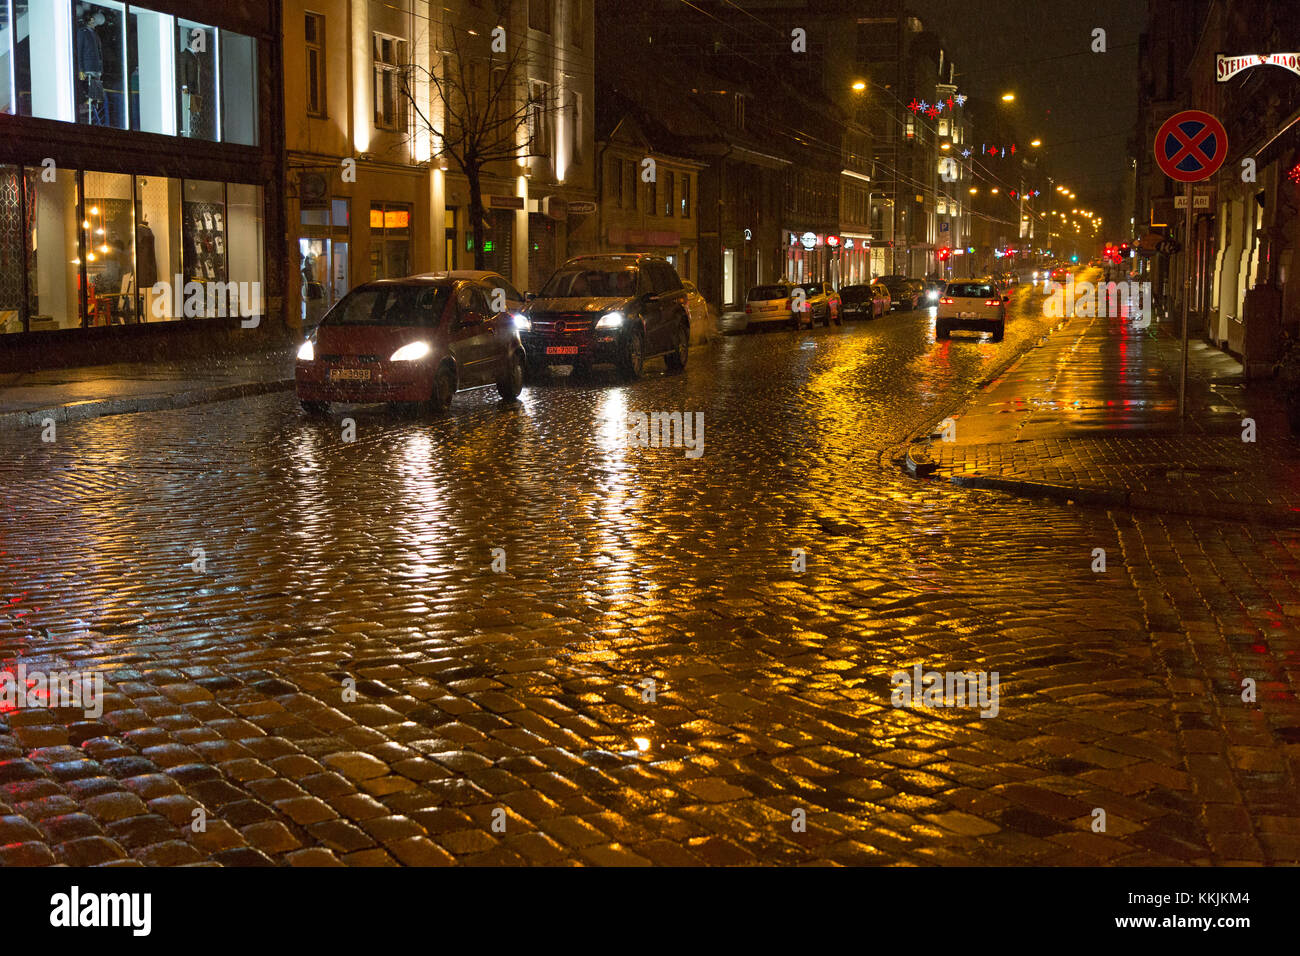 Ciottoli di notte a riga, Lettonia. Le luci si riflettono sui ciottoli bagnati dalla pioggia e dalla slitta. Foto Stock